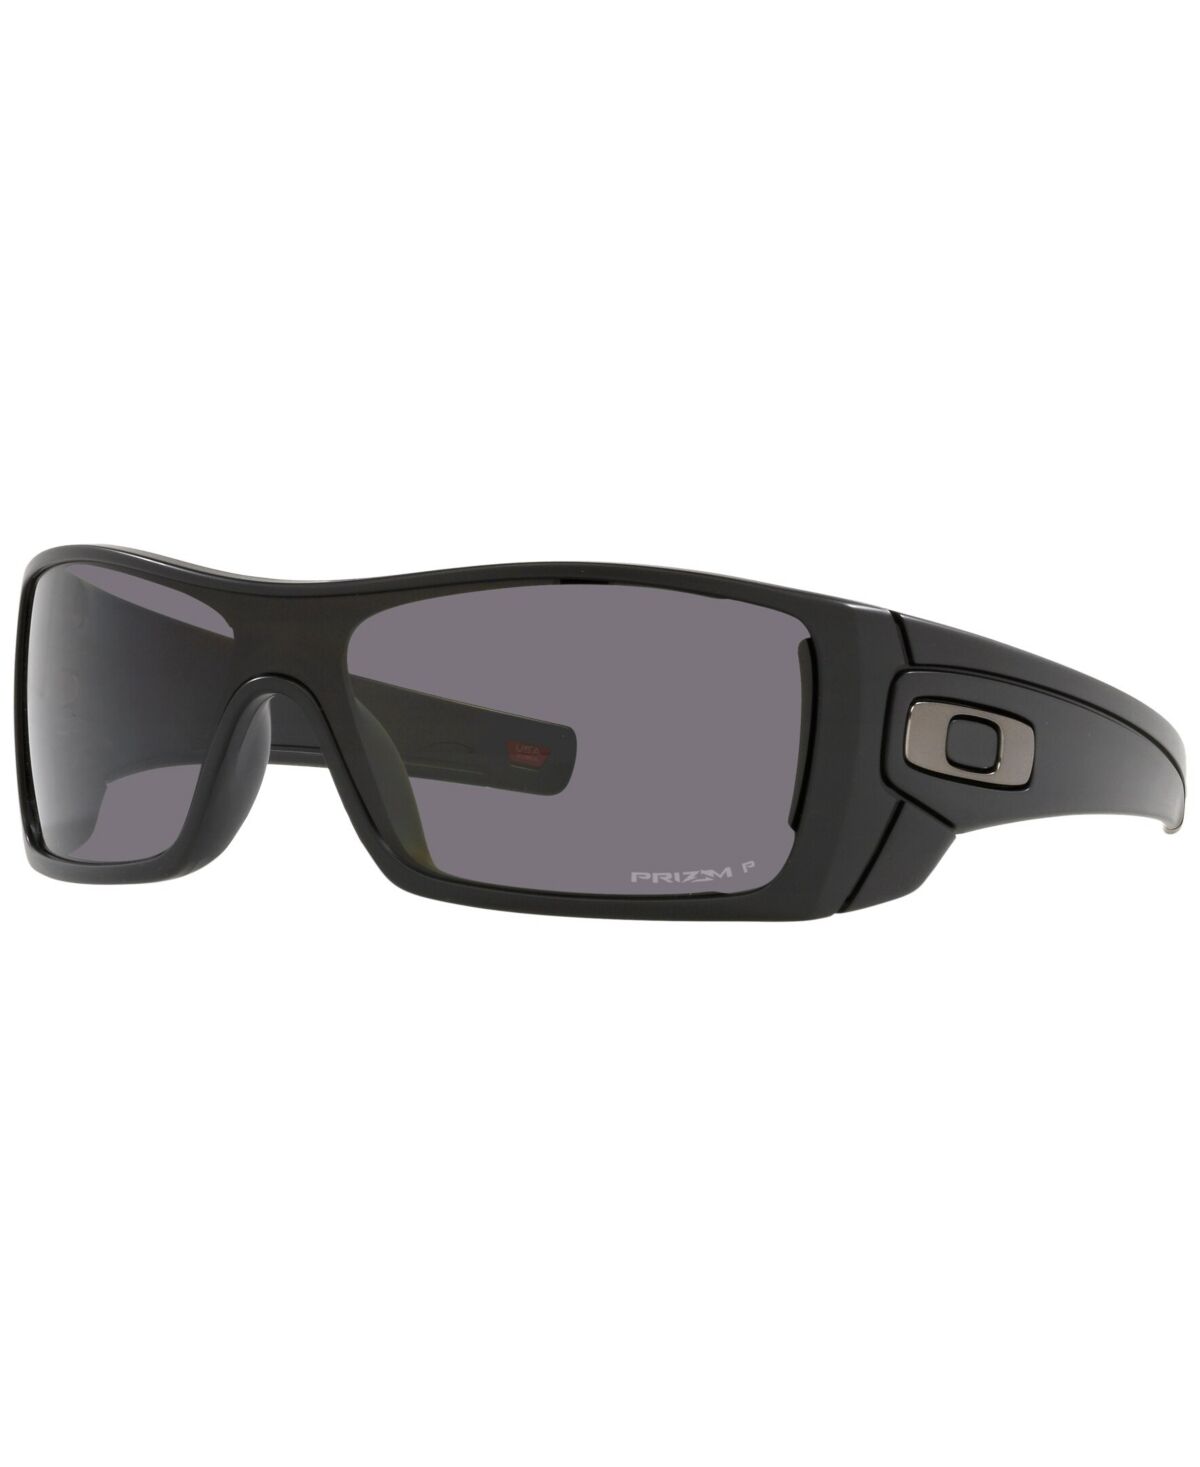 Oakley Men's Polarized Sunglasses, OO9101 Batwolf 27 - Matte Black